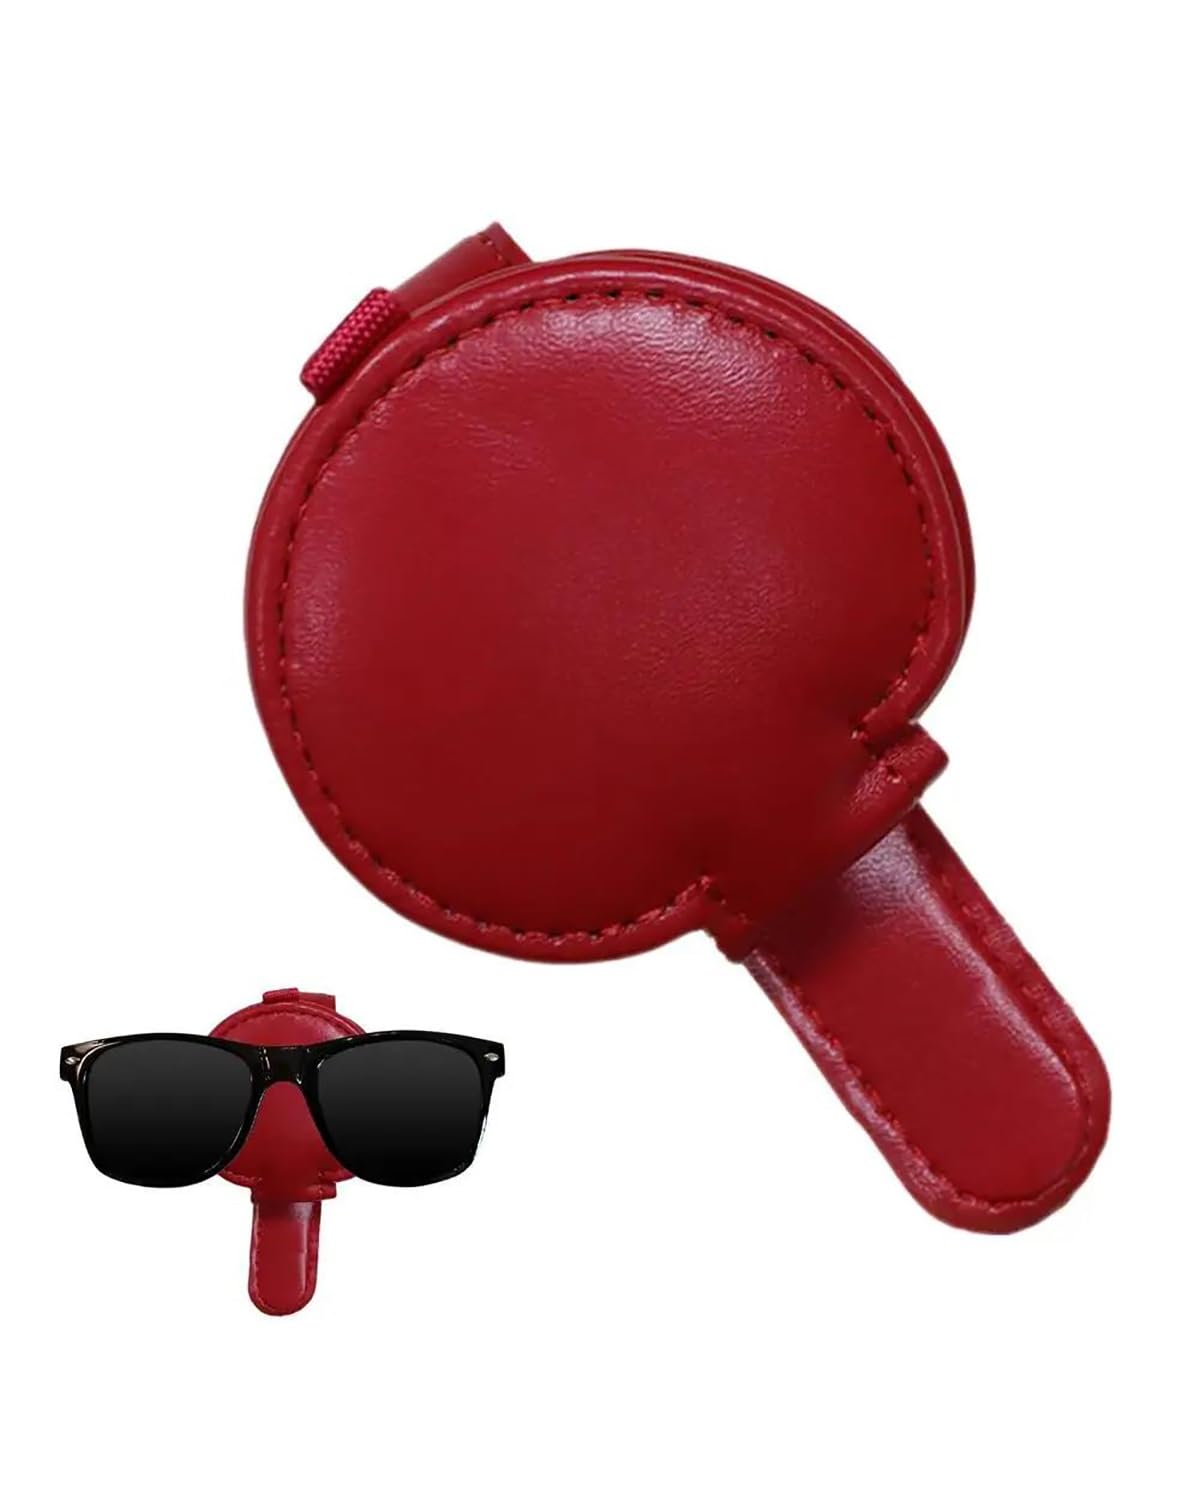 Sonnenbrillenhalter Auto Brillenhalter Für Die Sonnenblende Im Auto PU-Leder Visier Sonnenbrillenhalter Clip Sonnenbrillen-Organizer Multifunktionale Auto-Inneneinrichtung Brillenhalter für Auto(Red) von CMLGWL